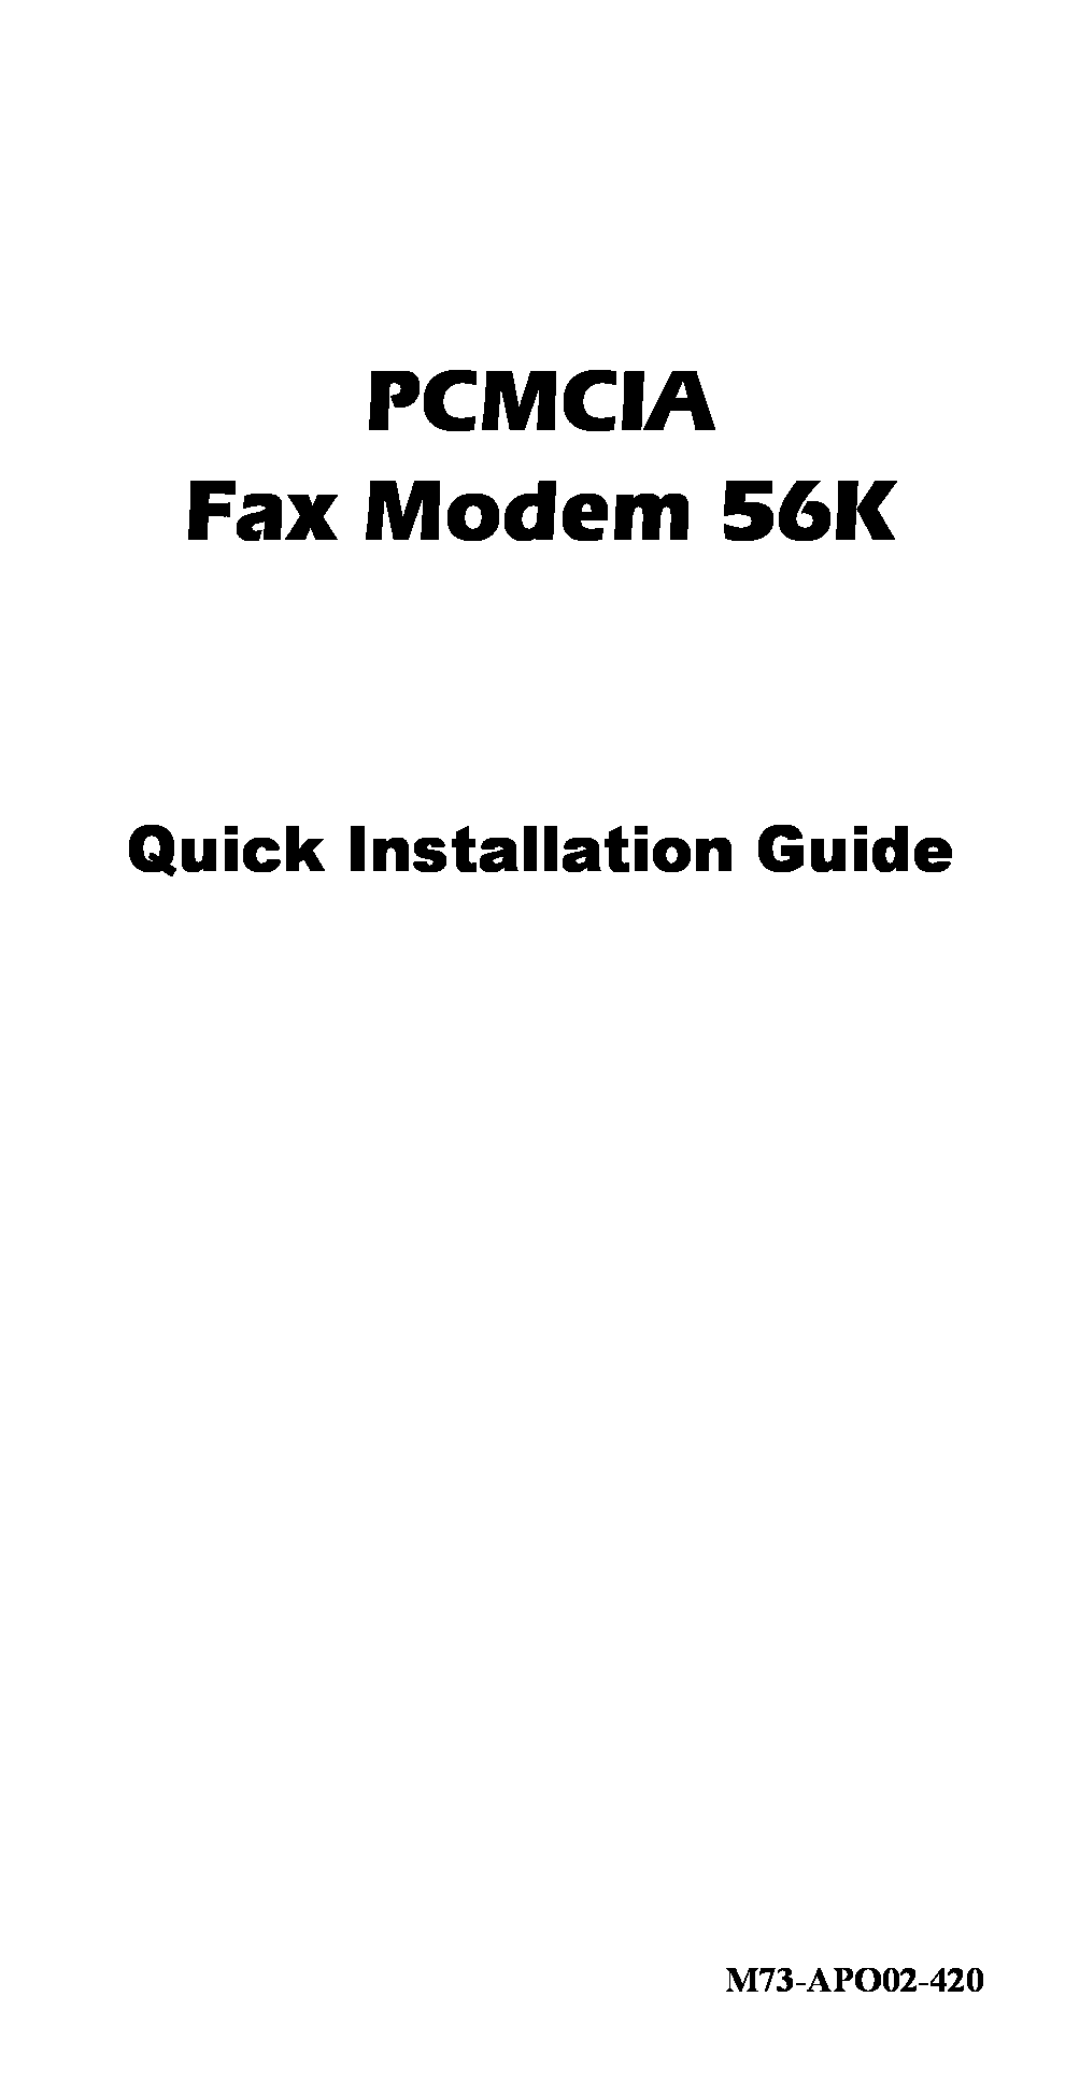 Abocom FM560MX manual PCMCIA Fax Modem 56K, Quick Installation Guide, M73-APO02-420 